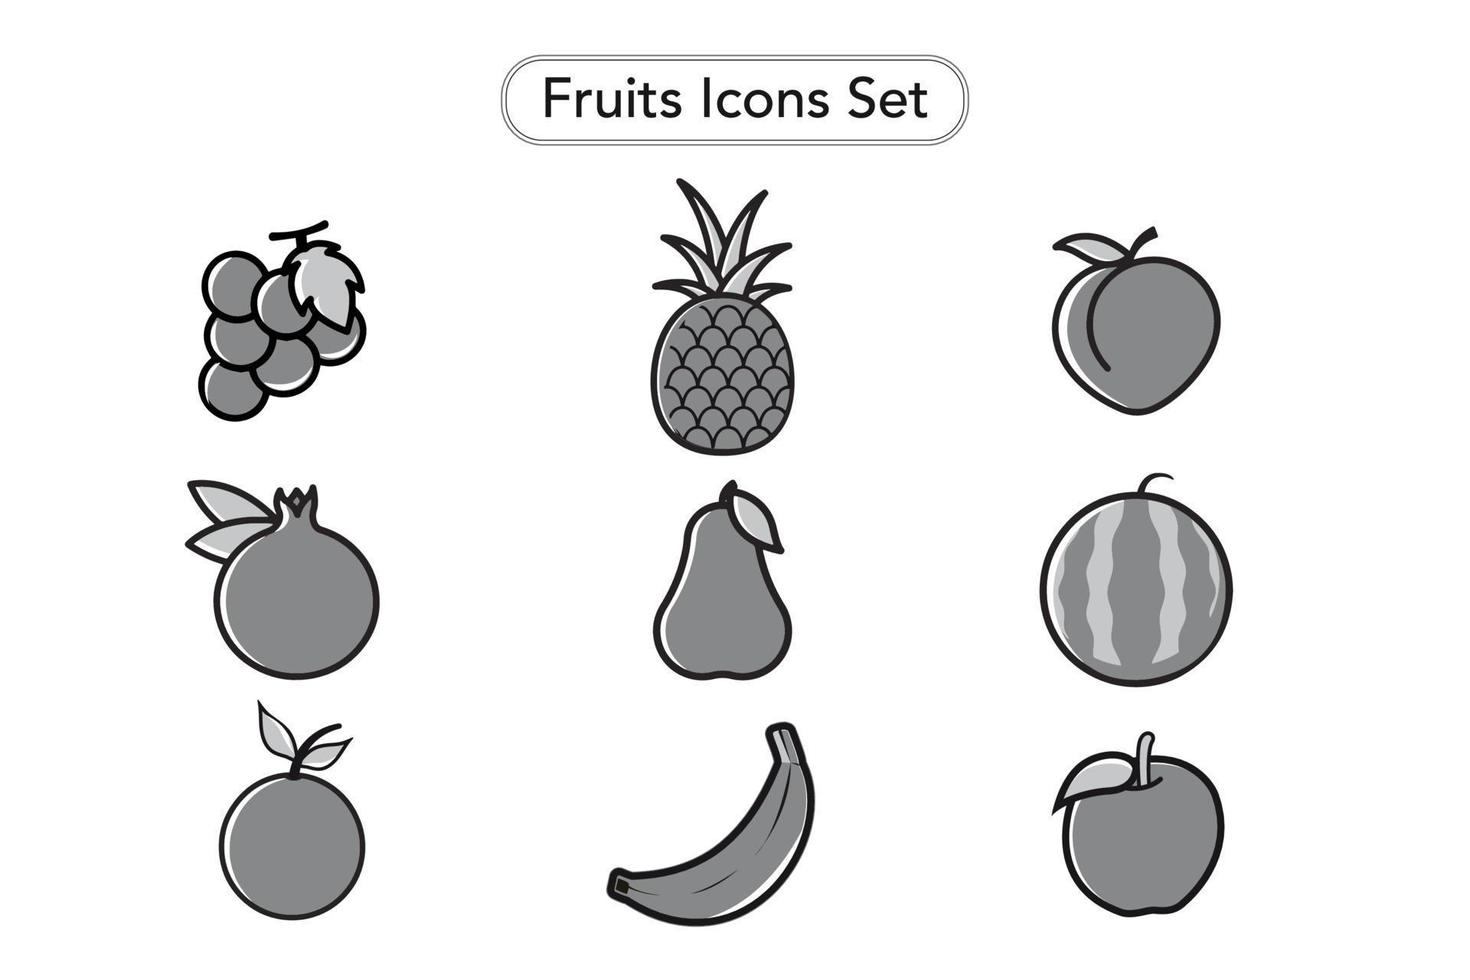 conjunto de iconos de frutas. colección de imágenes prediseñadas de frutas. uva, granada, melocotón, piña, pera, sandía, manzana, naranja y plátano. conjunto de pegatinas de frutas. vectores en blanco y negro